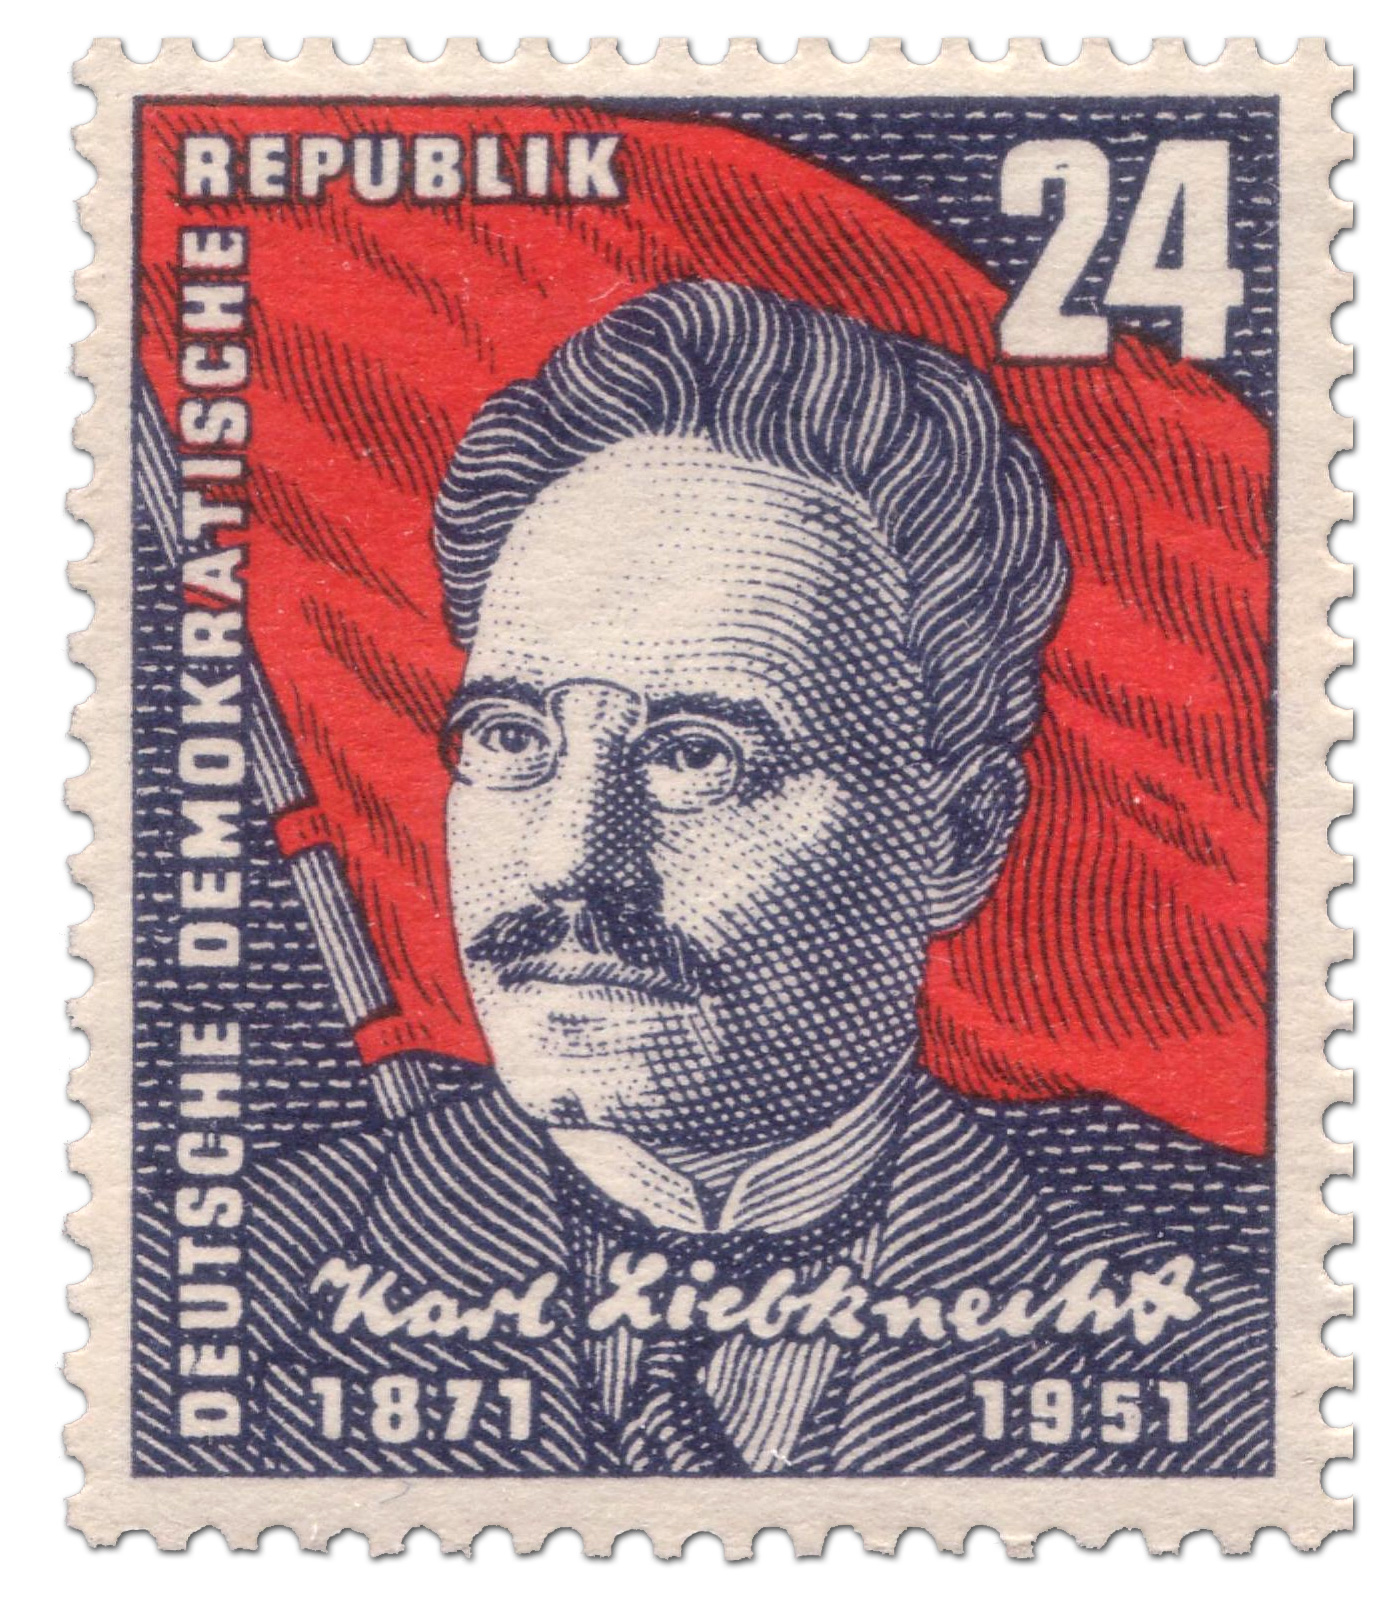 DDR-Briefmarke zum 80. Geburtstag von Karl Liebknecht